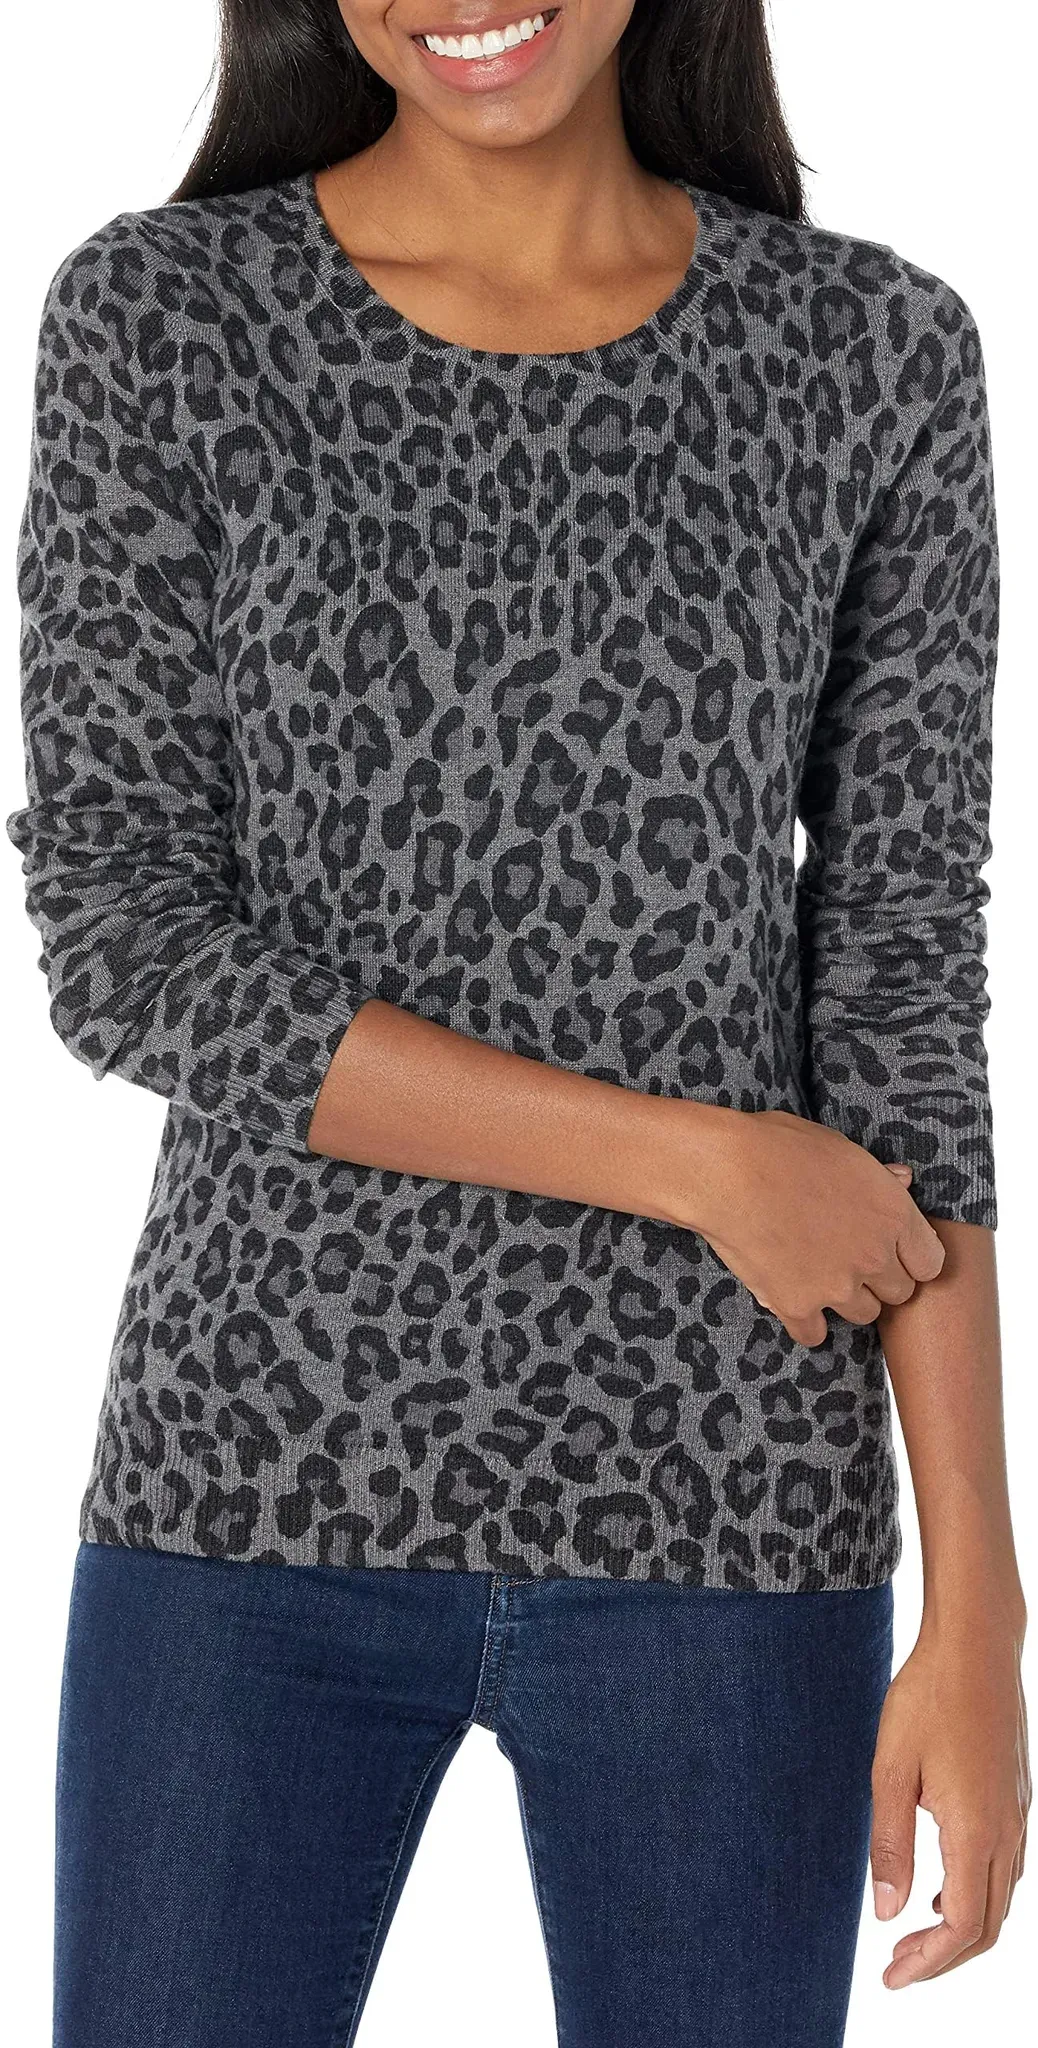 Amazon Essentials Damen Leichter, Langärmeliger Pullover Mit Rundhalsausschnitt (Erhältlich in Übergröße), Grau Gepardenaufdruck, M